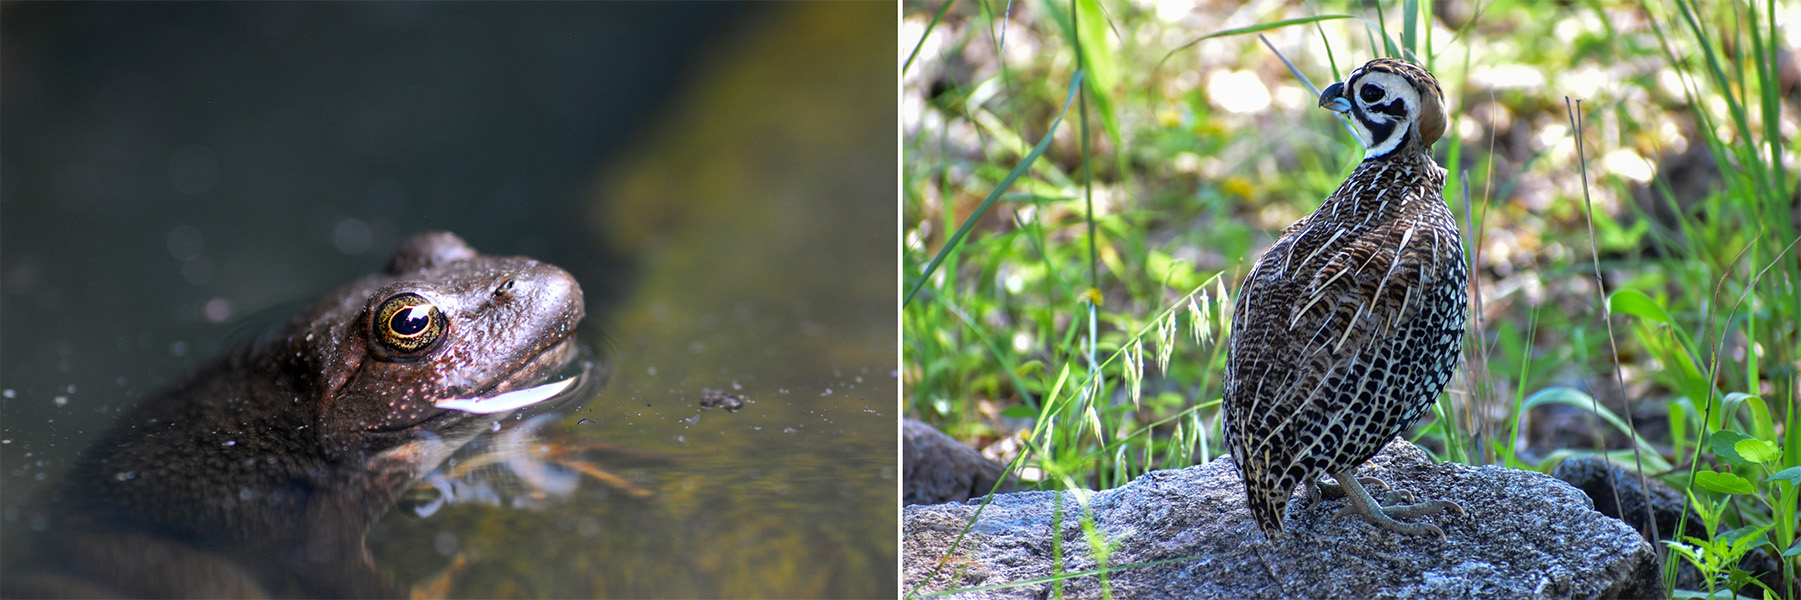 Dos fotos. En una se observa una rana en un charco y en la otra un ave posada sobre un piedra